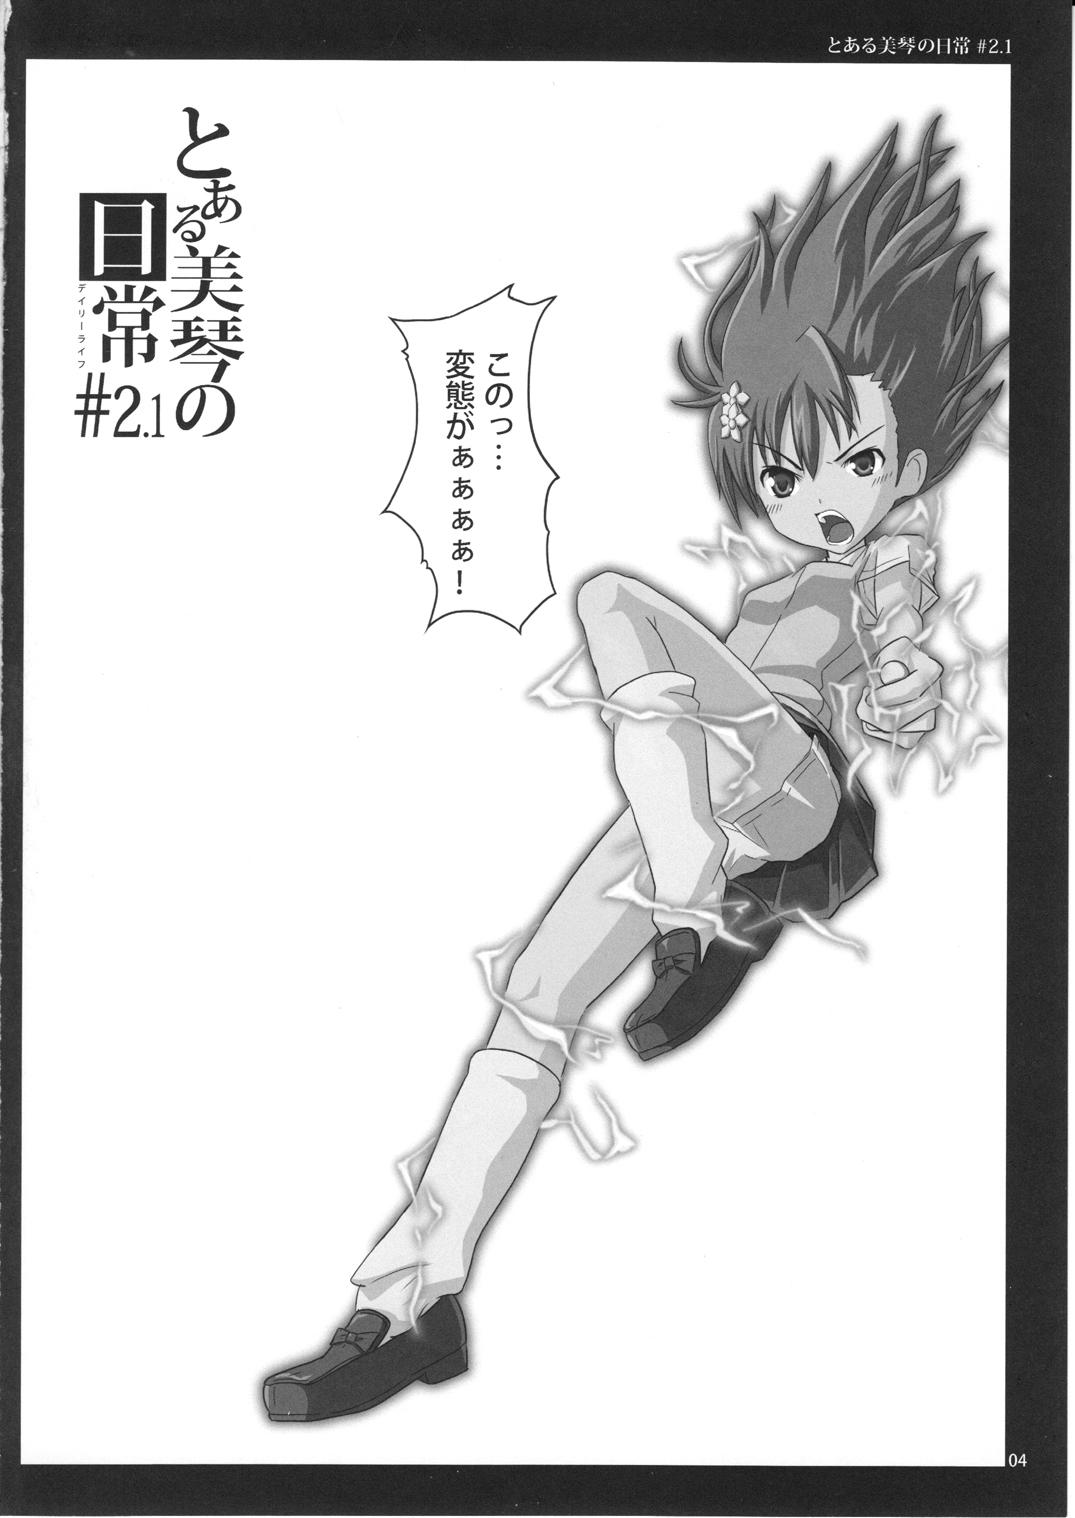 Latina To Aru Mikoto no Nichijou 2.1 - Toaru kagaku no railgun Sologirl - Page 4